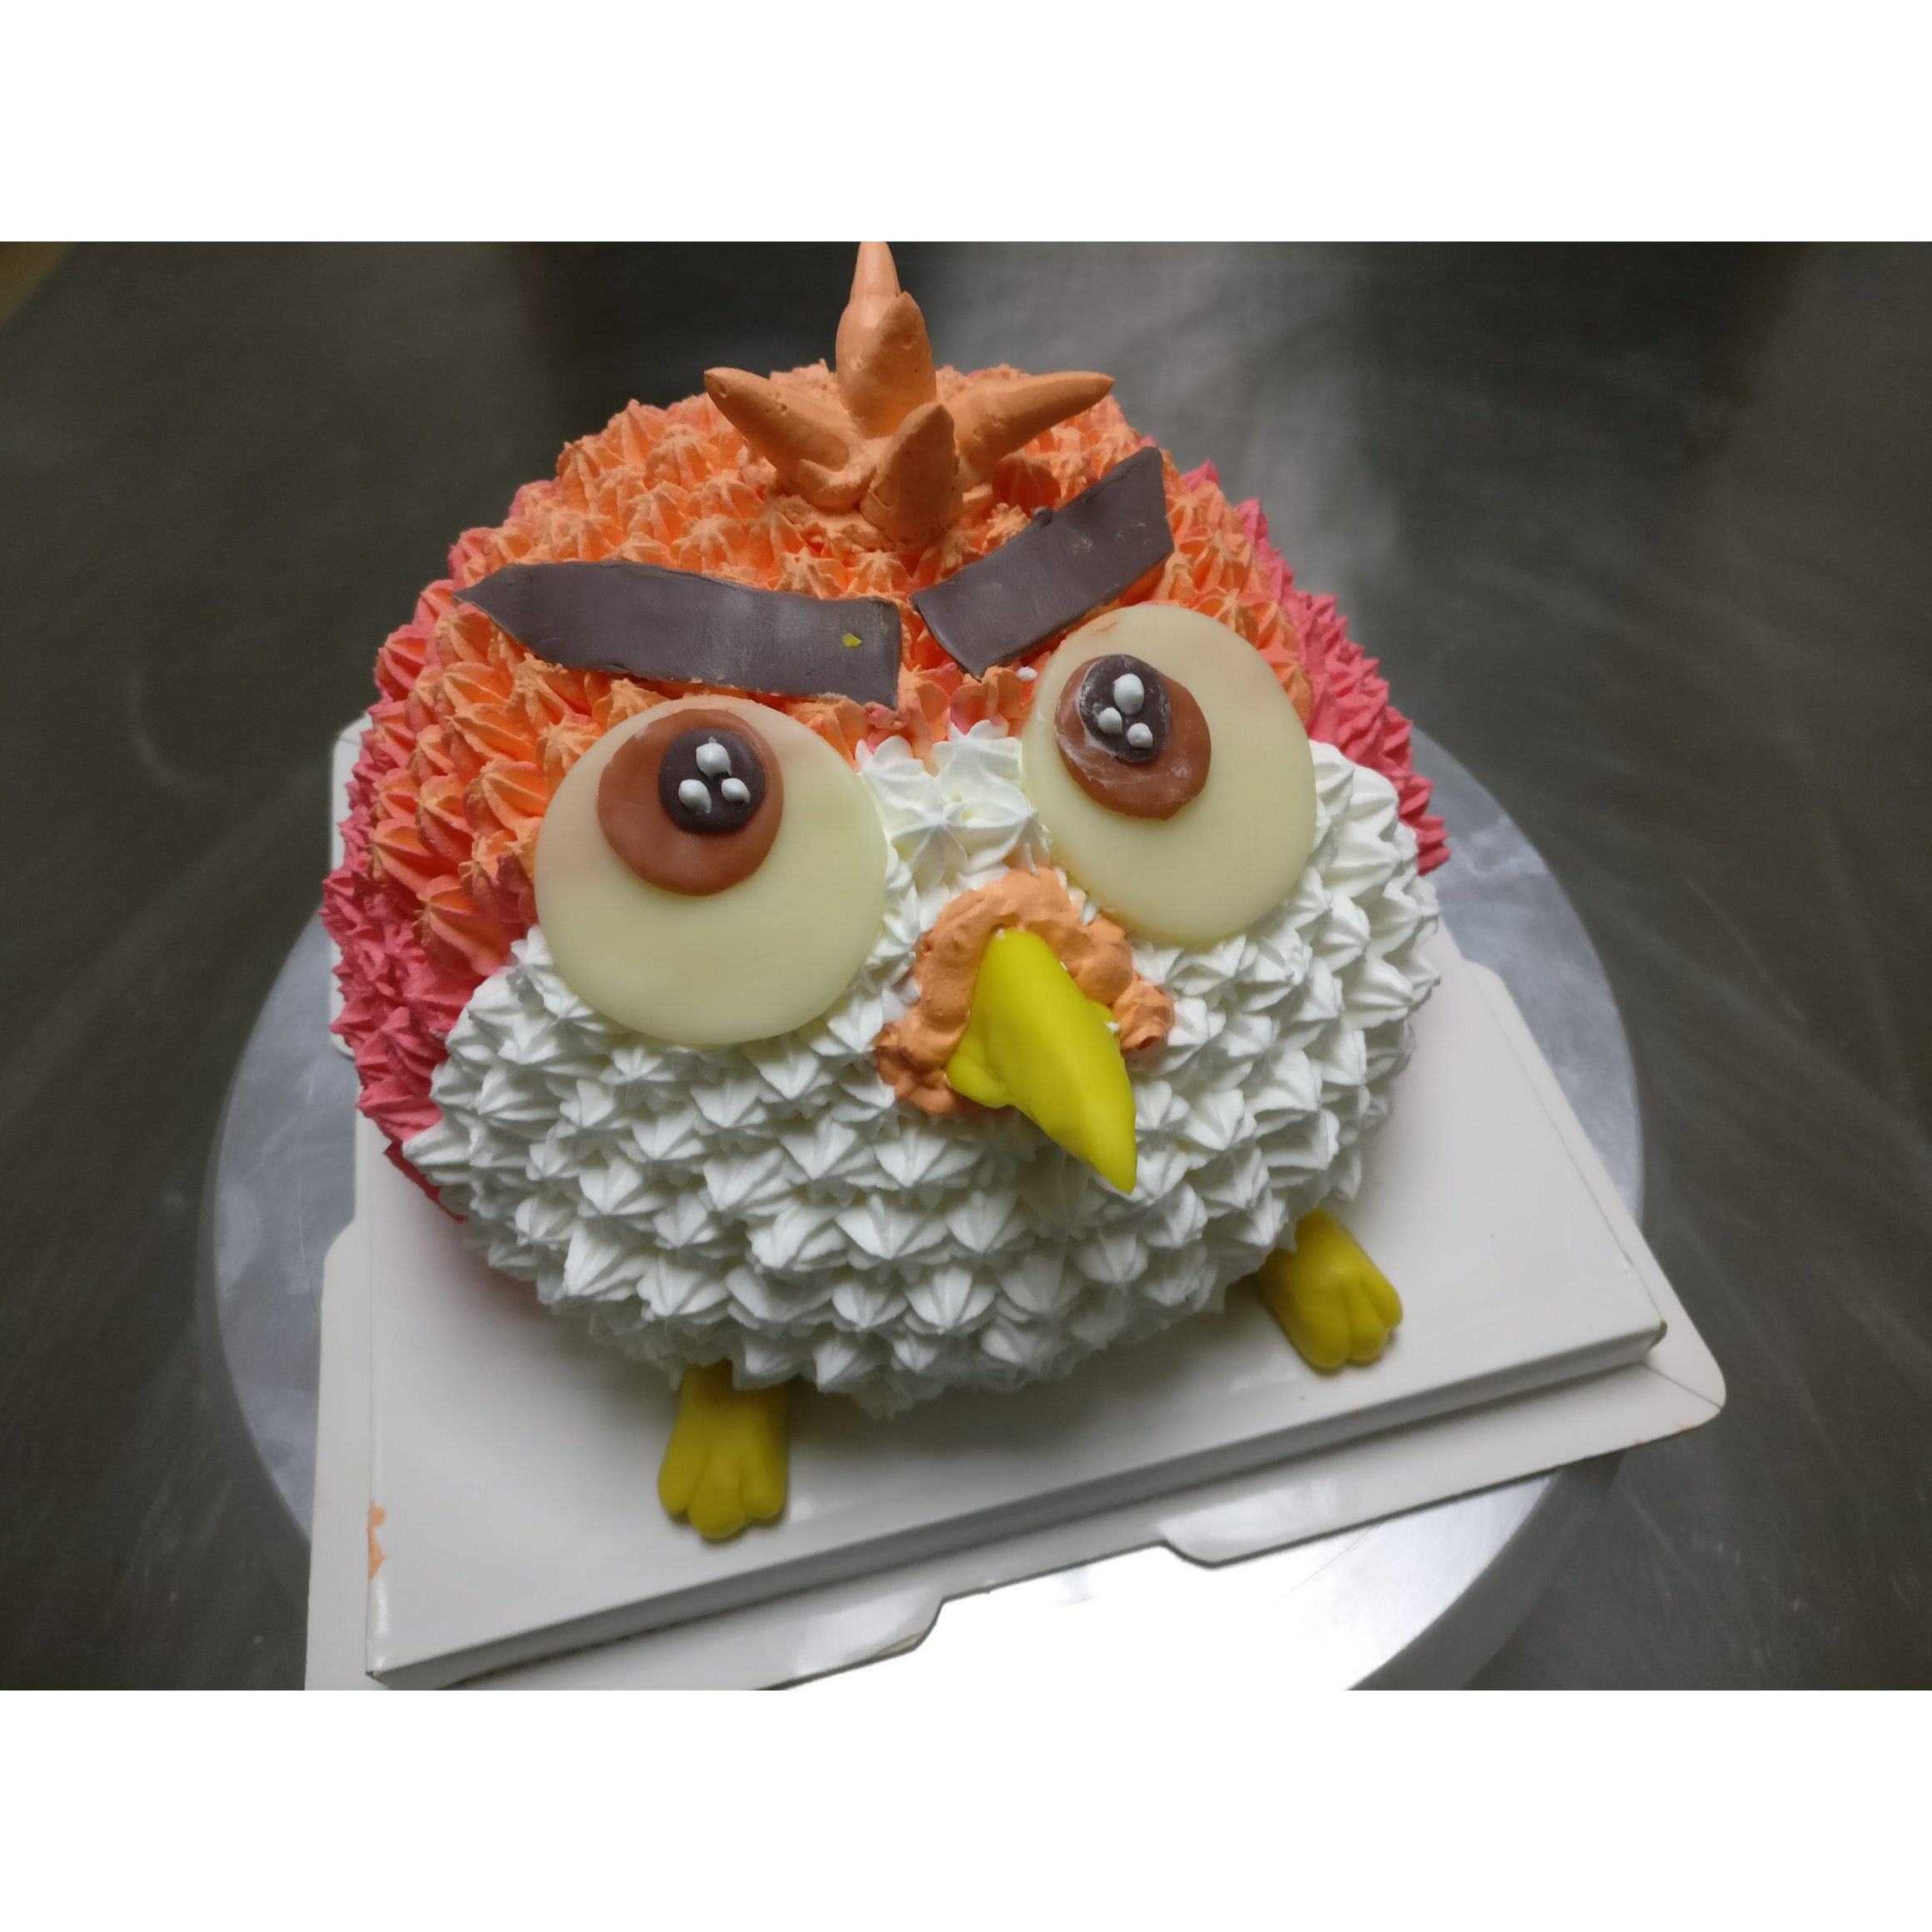 愤怒的小鸟3D卡通蛋糕(超详细步骤)